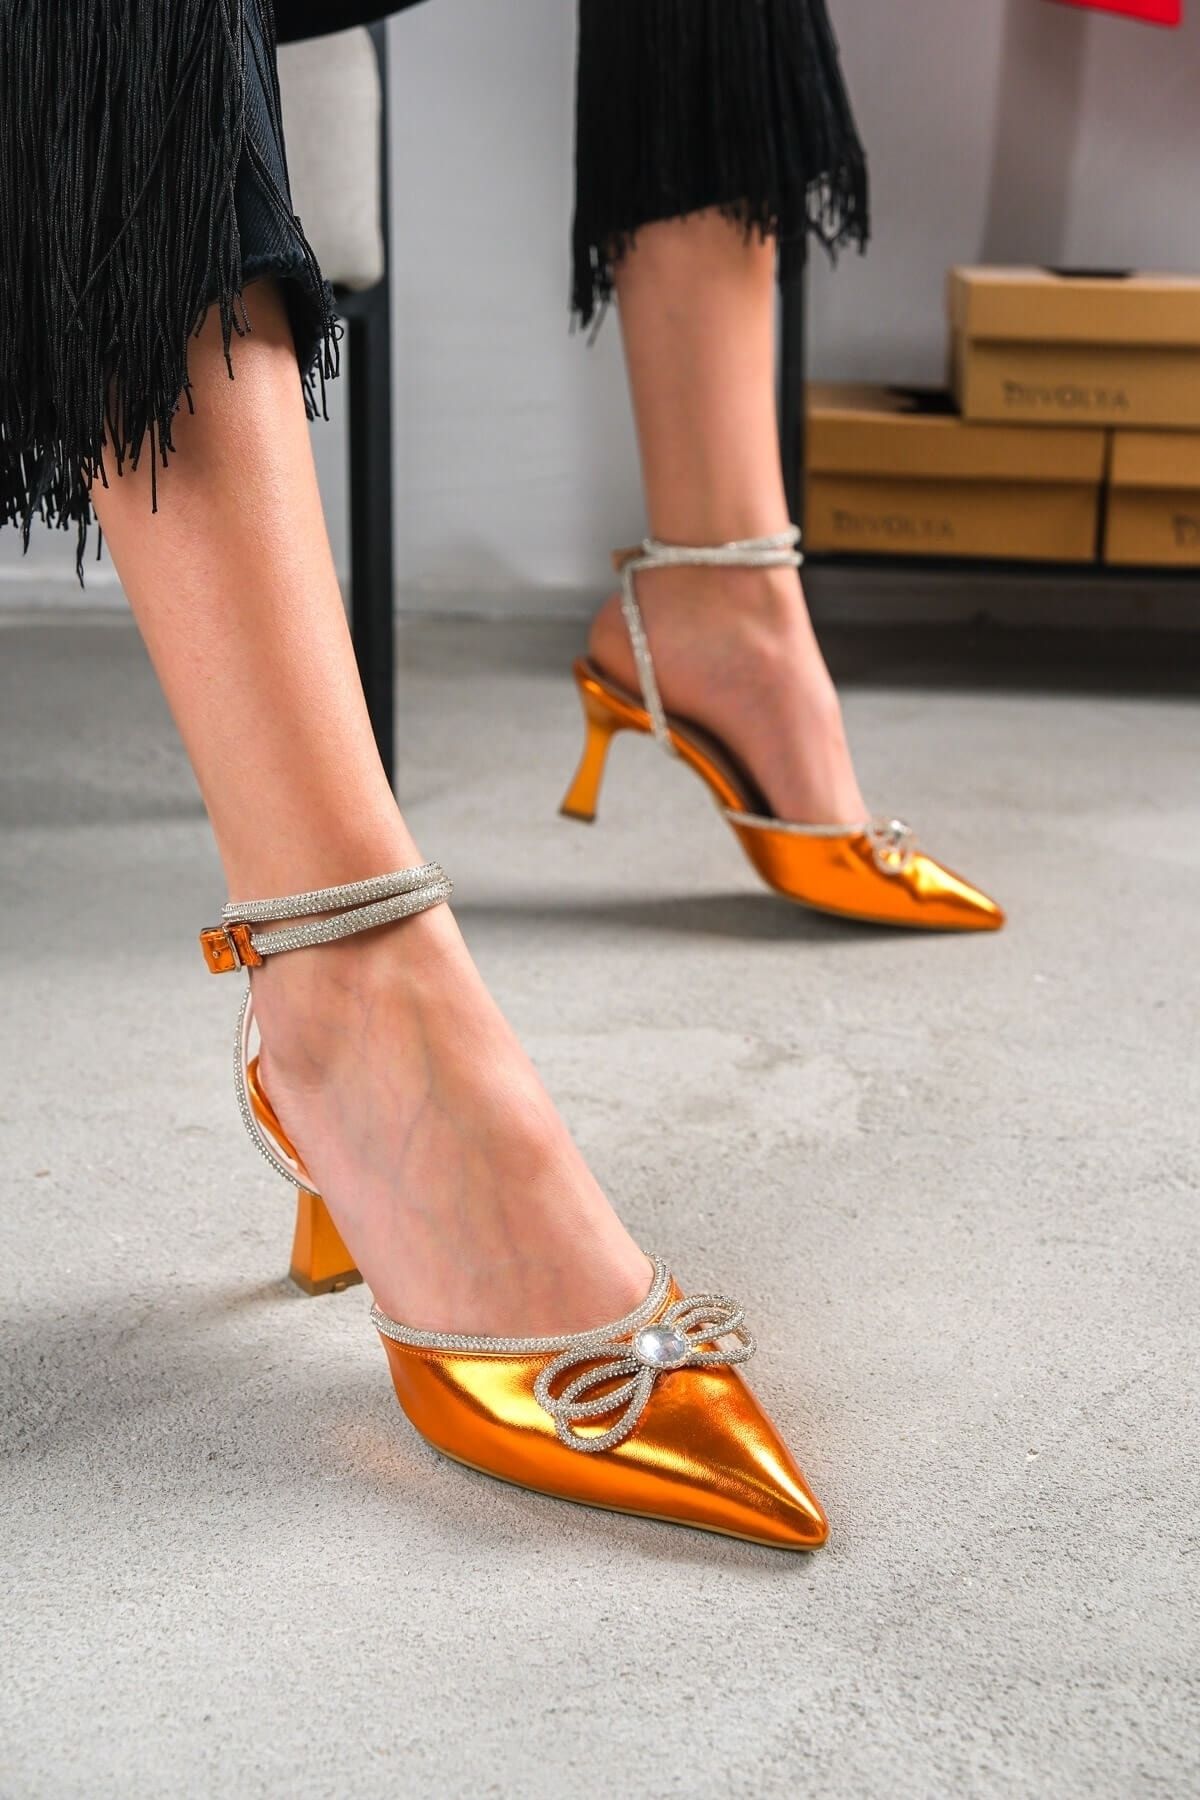 DİVOLYA Tango Turuncu Bilekten Bağlamalı Taşlı Topuklu Ayakkabı